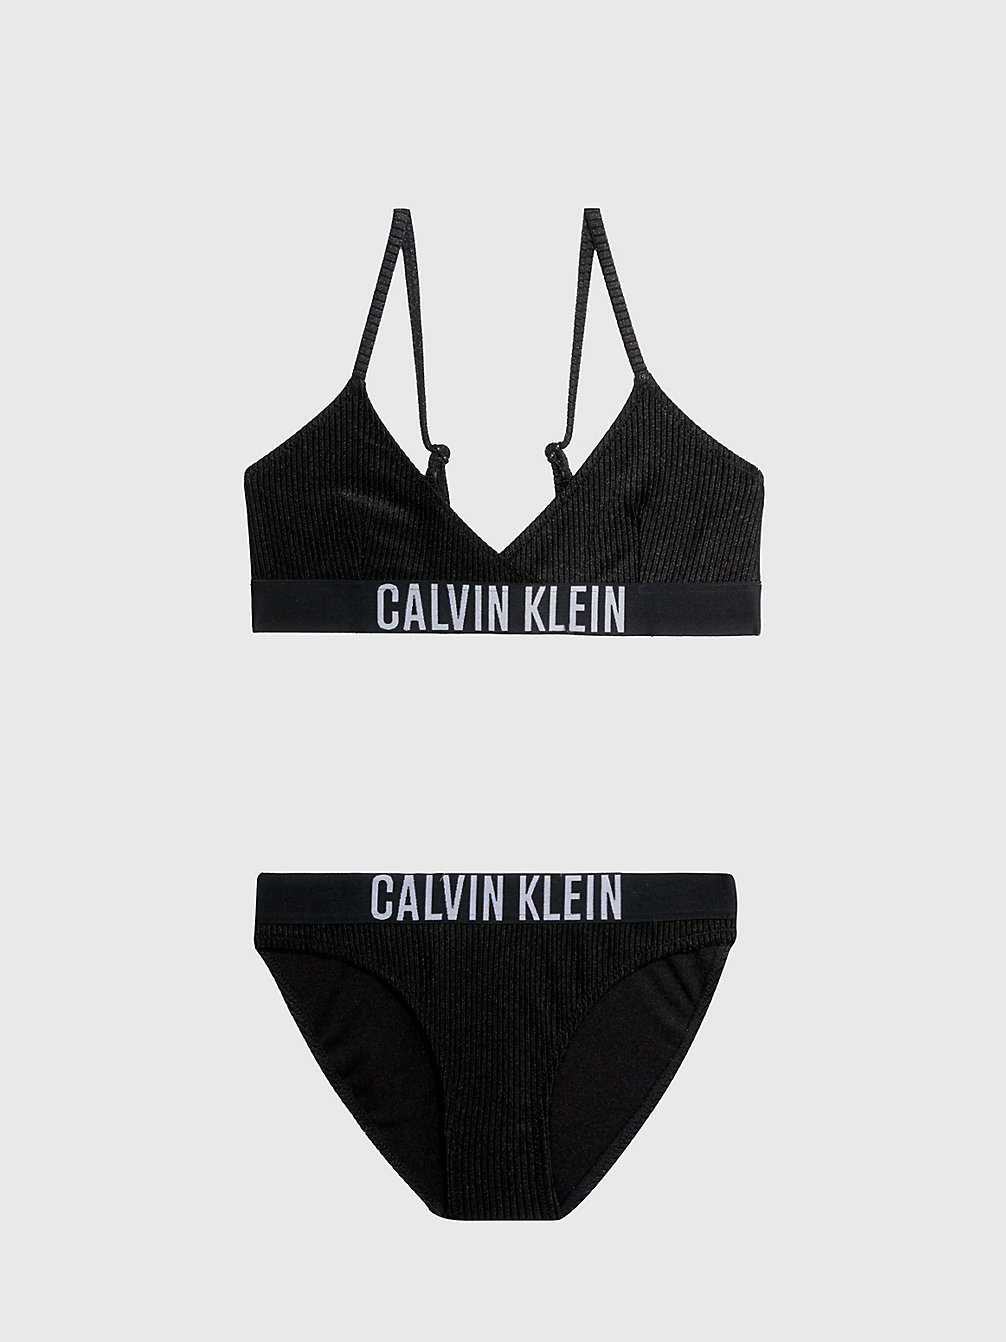 PVH BLACK > Dziewczęcy Strój Kąpielowy Bikini Z Trójkątnymi Miseczkami - Intense Power > undefined girls - Calvin Klein